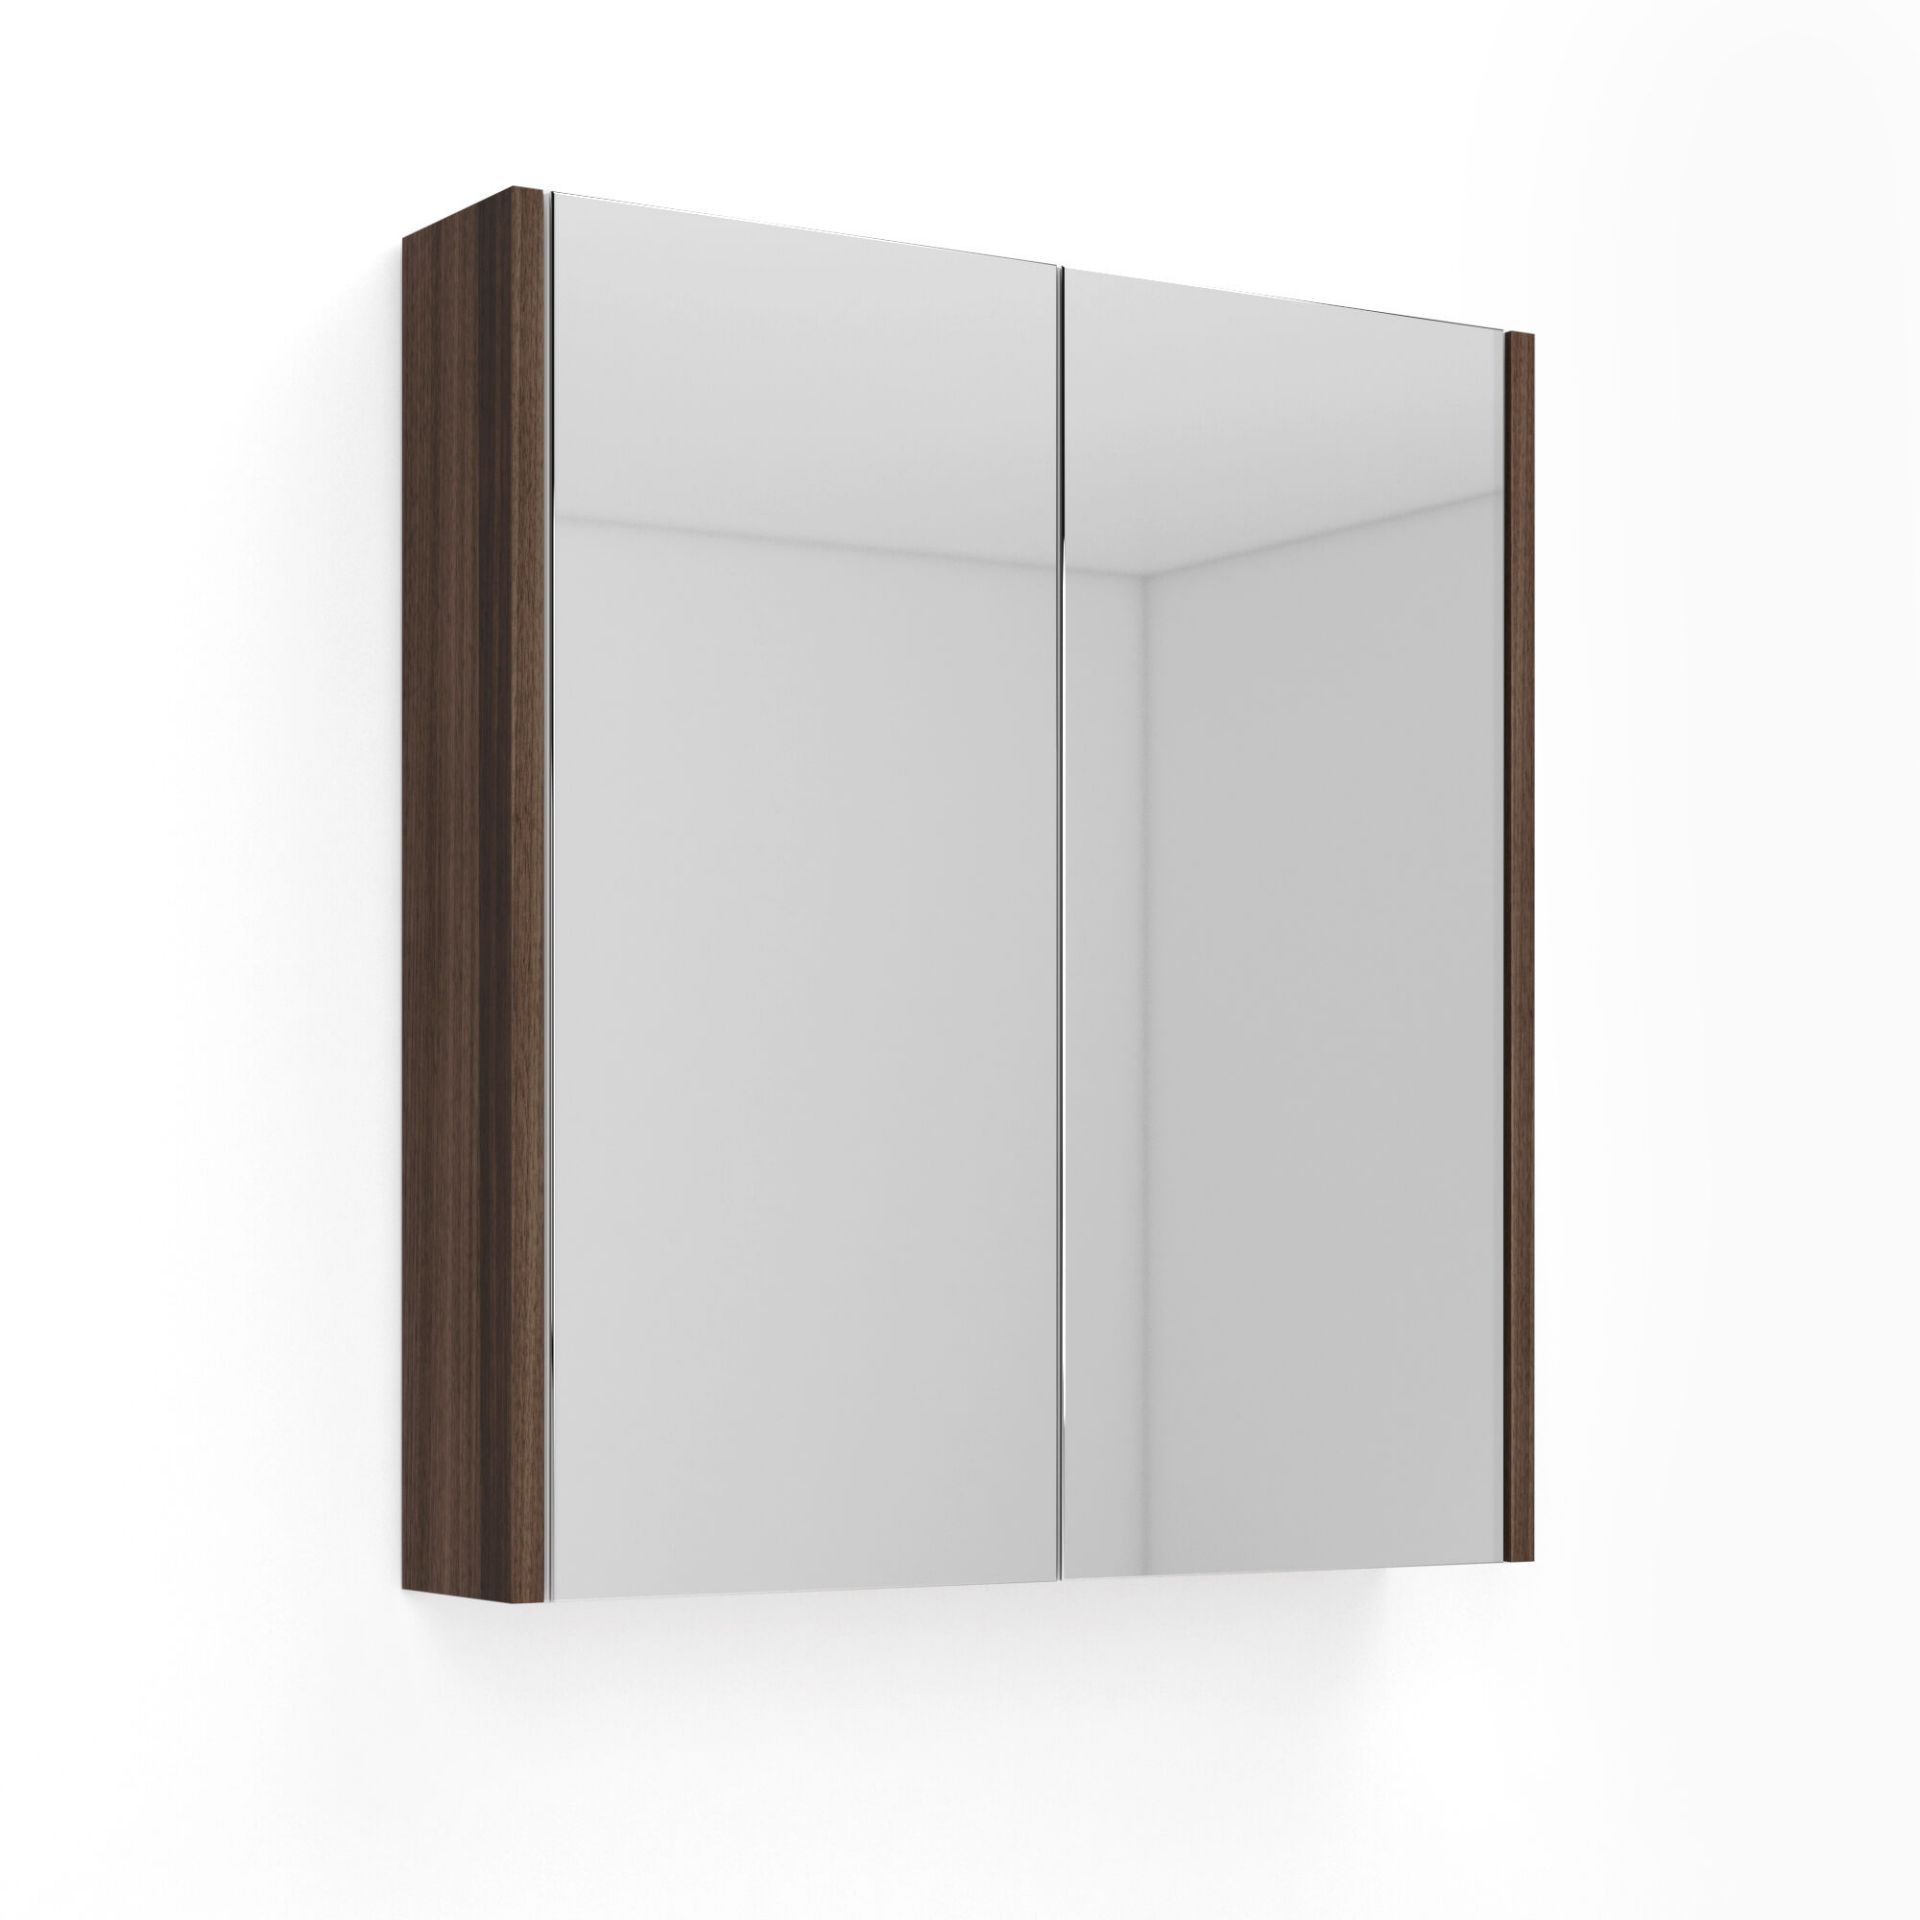 (TT32) 600mm Walnut Effect Double Door Mirror Cabinet. Sleek contemporary design Double door op...